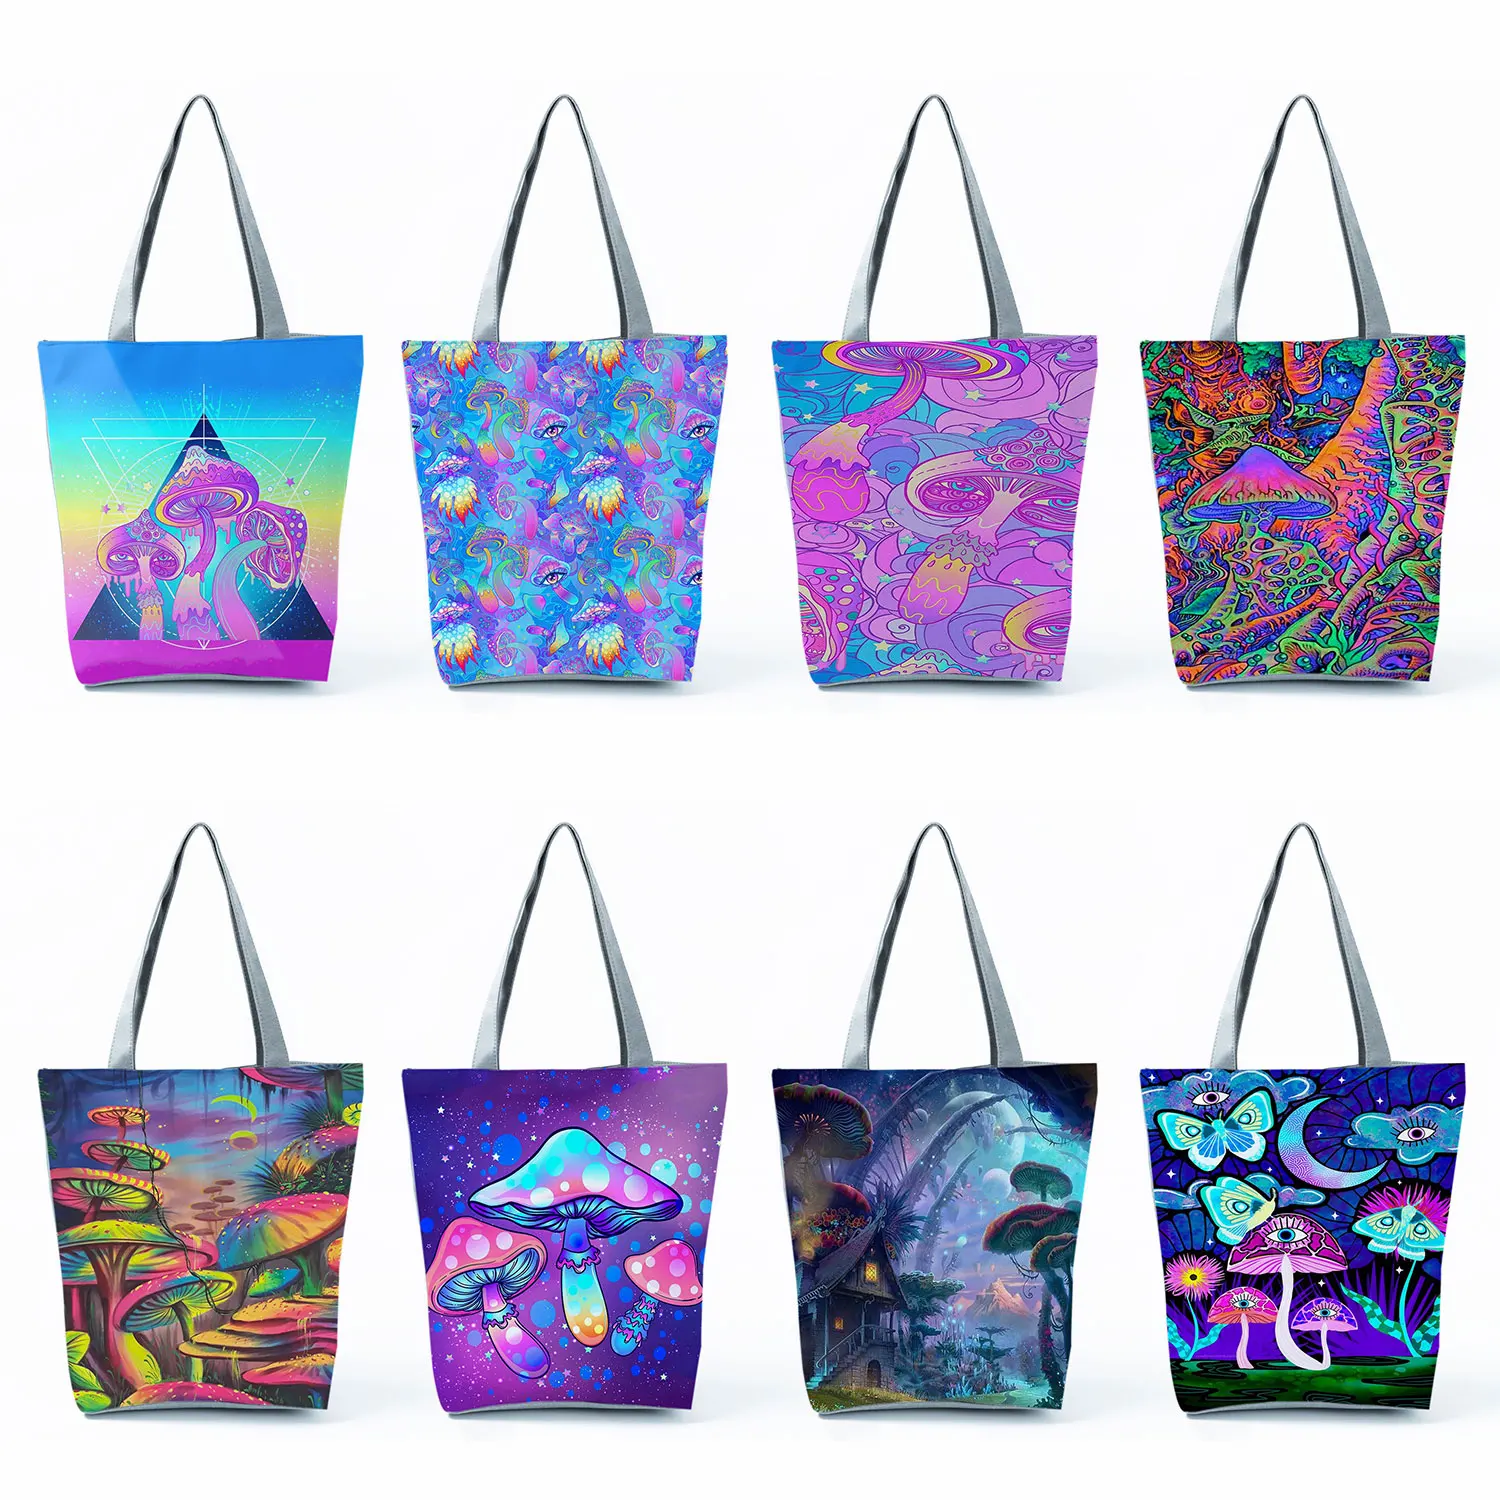 

Многоразовые сумки для покупок, модная красивая вместительная сумочка на плечо с психоделическим рисунком грибов, мандалы, Женский тоут